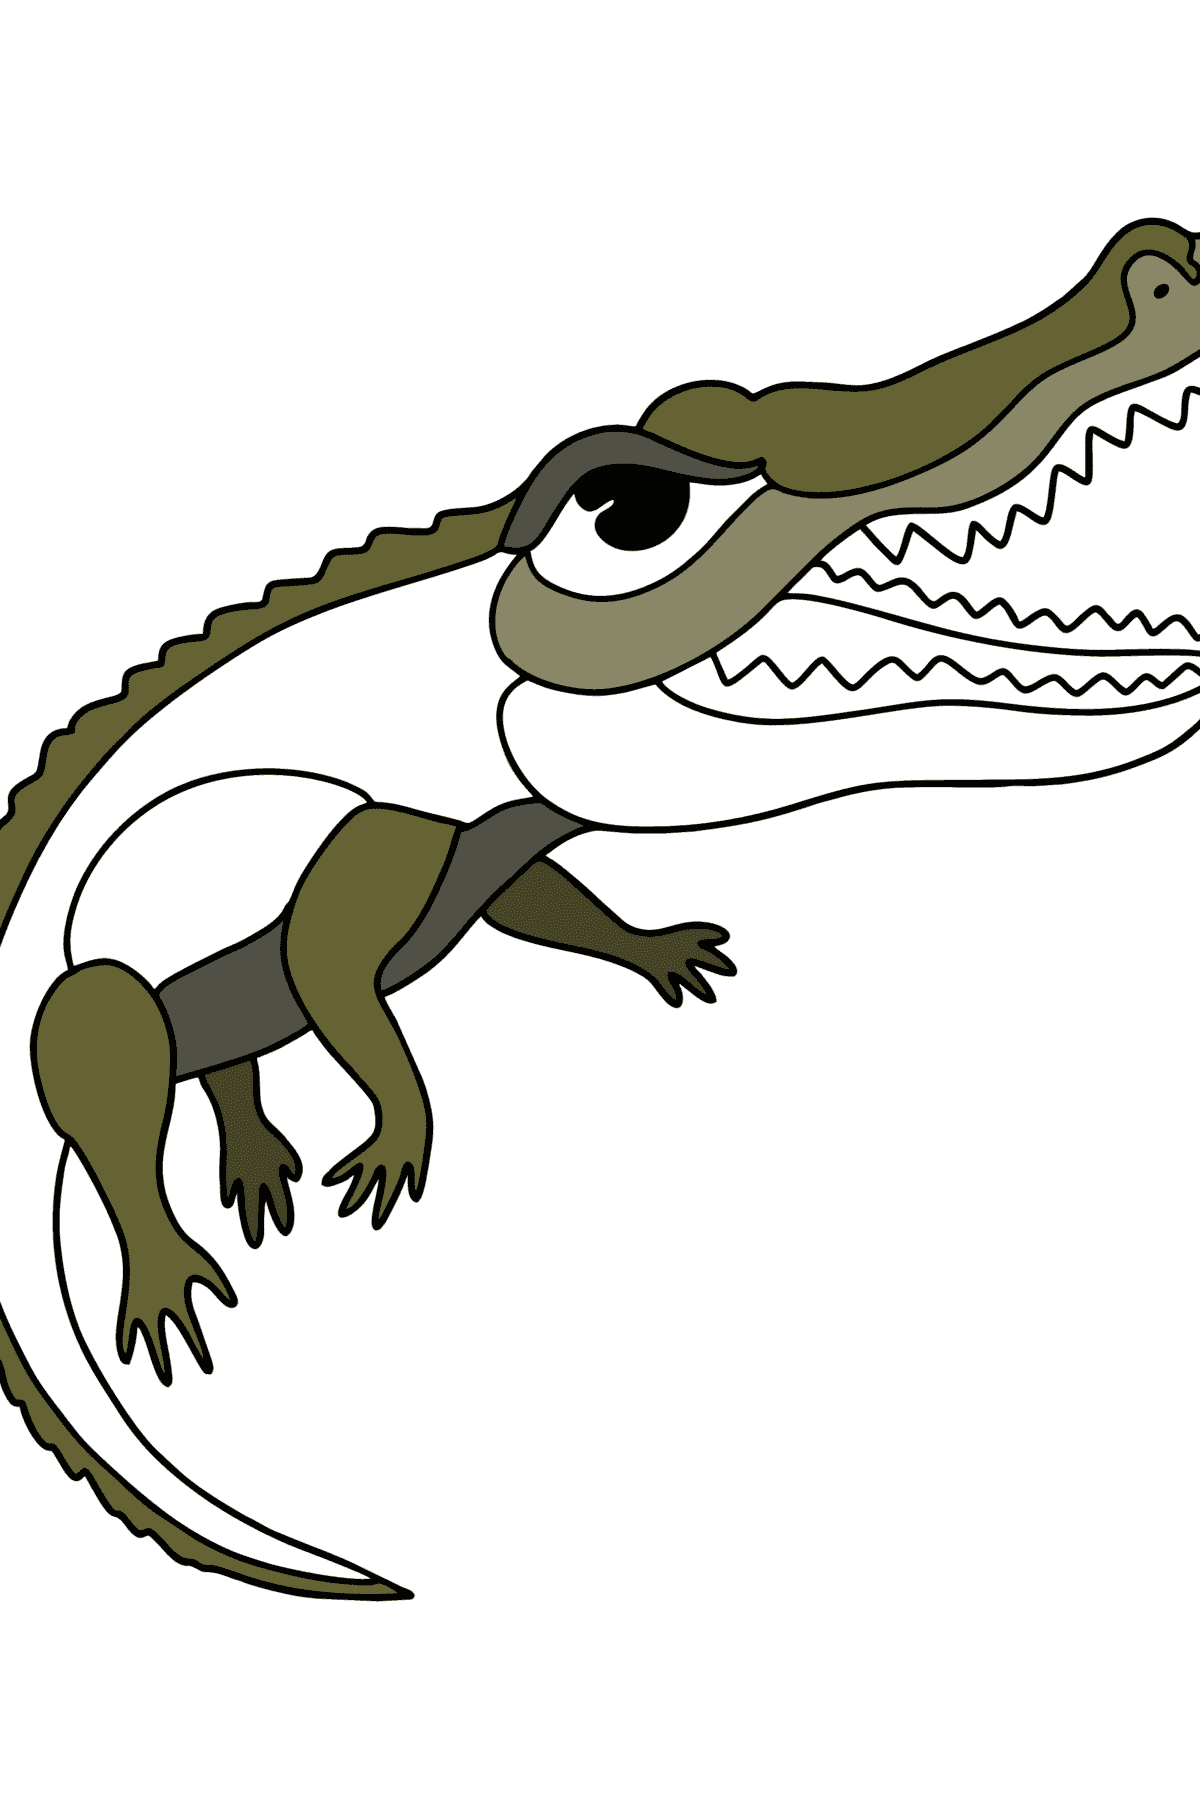 Desenho Crocodilo de água salgada para colorir - Imagens para Colorir para Crianças